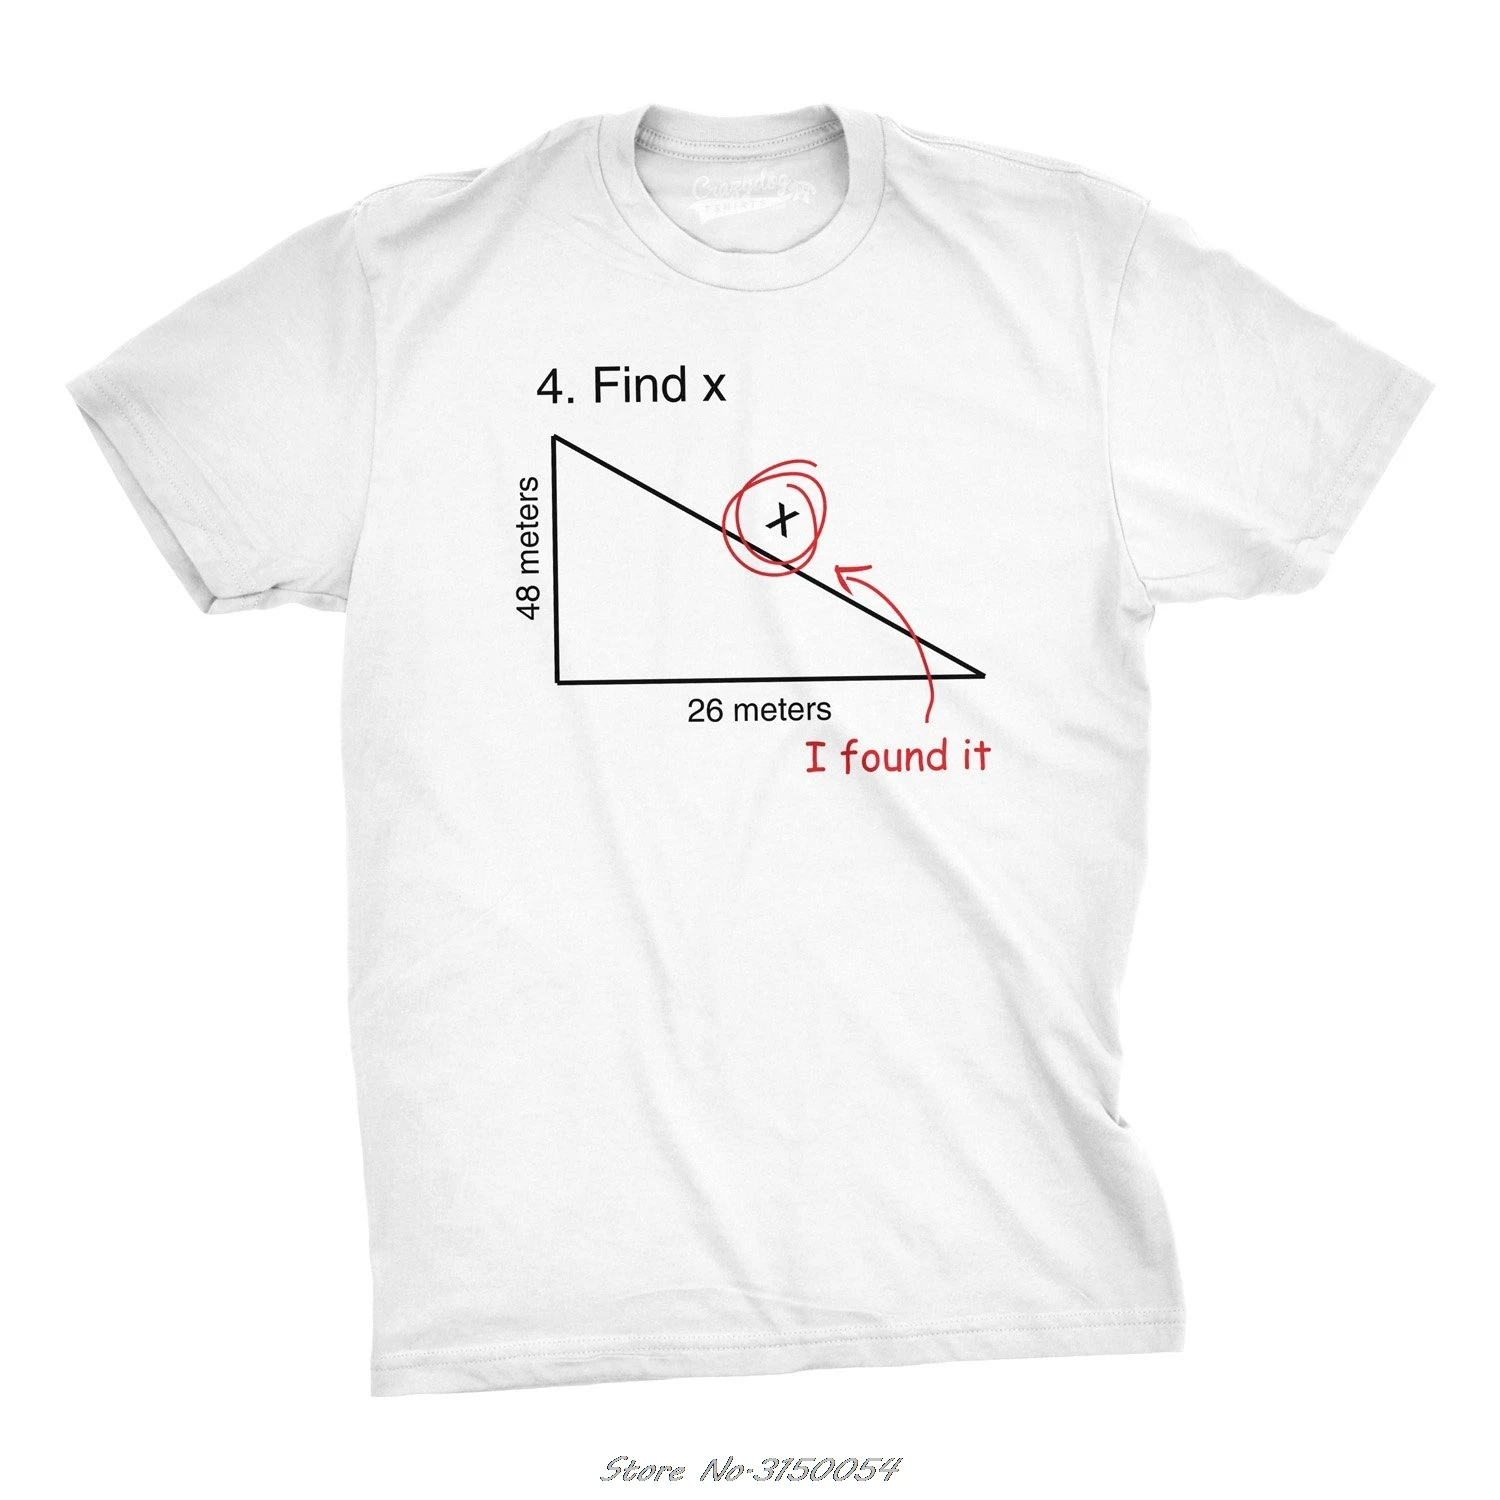 Find X Футболка забавная переменная Математика тест вопрос остроумный ответ футболка Повседневная футболка классная уличная одежда